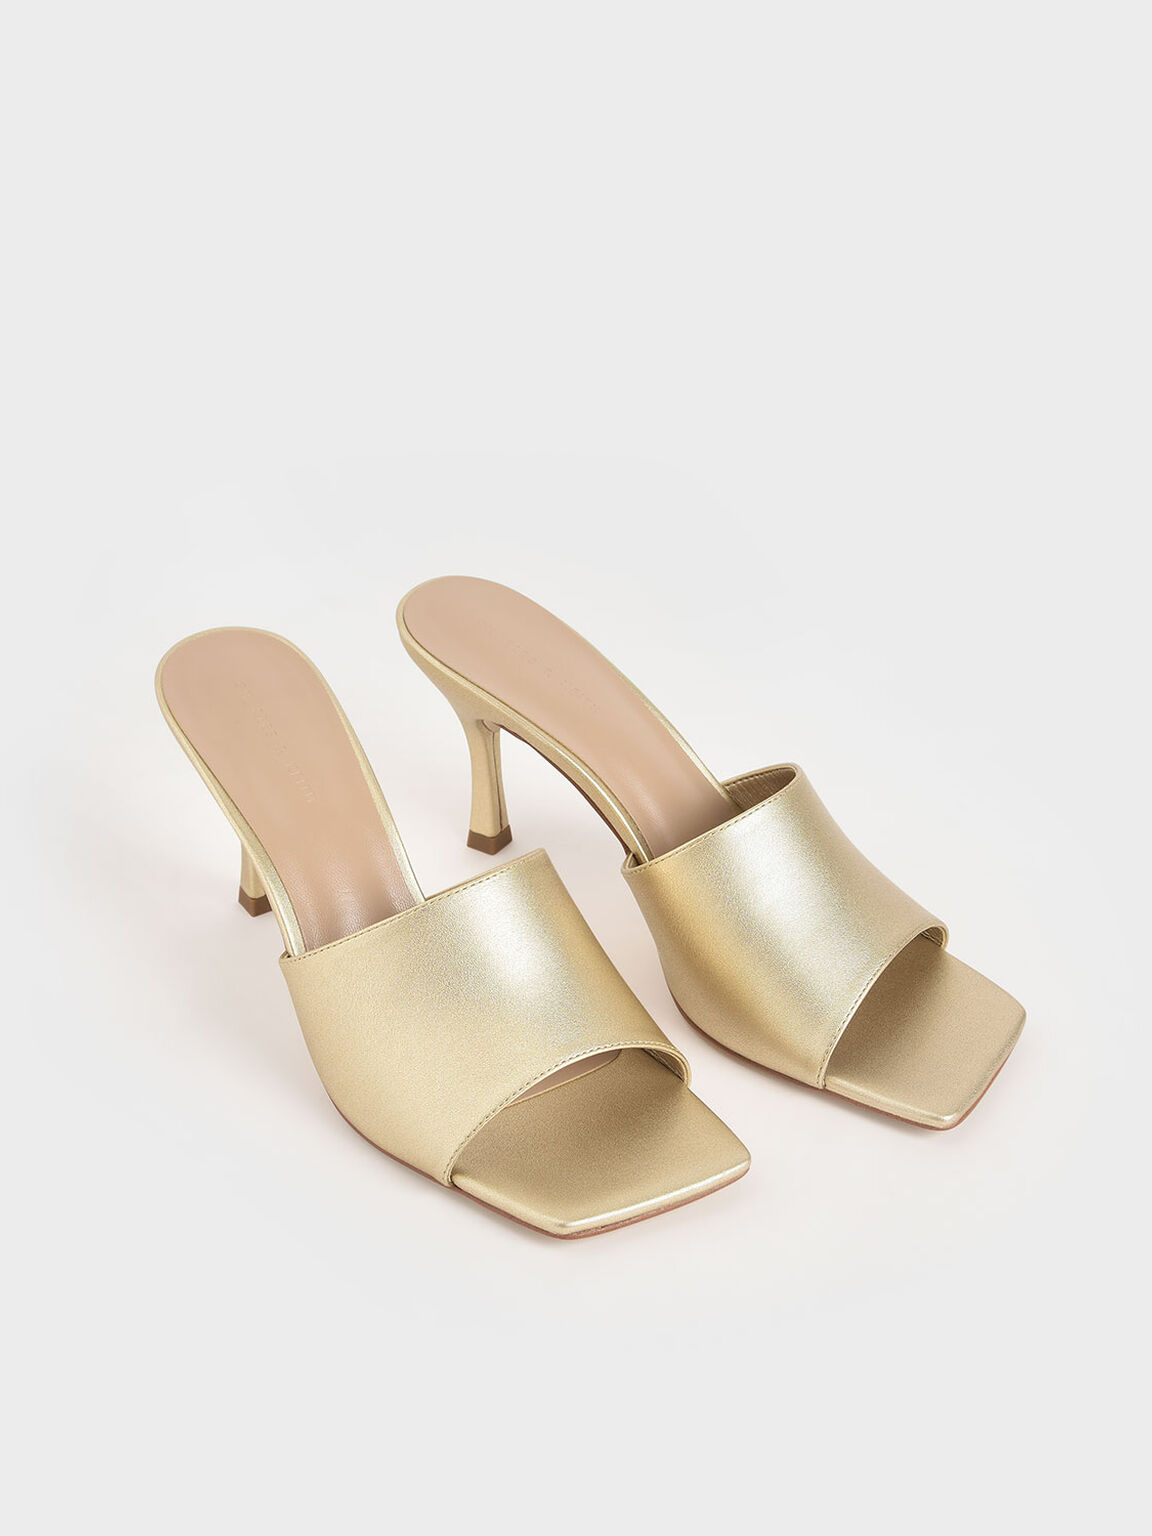 Sandal Mules Metallic Square Toe, Gold, hi-res